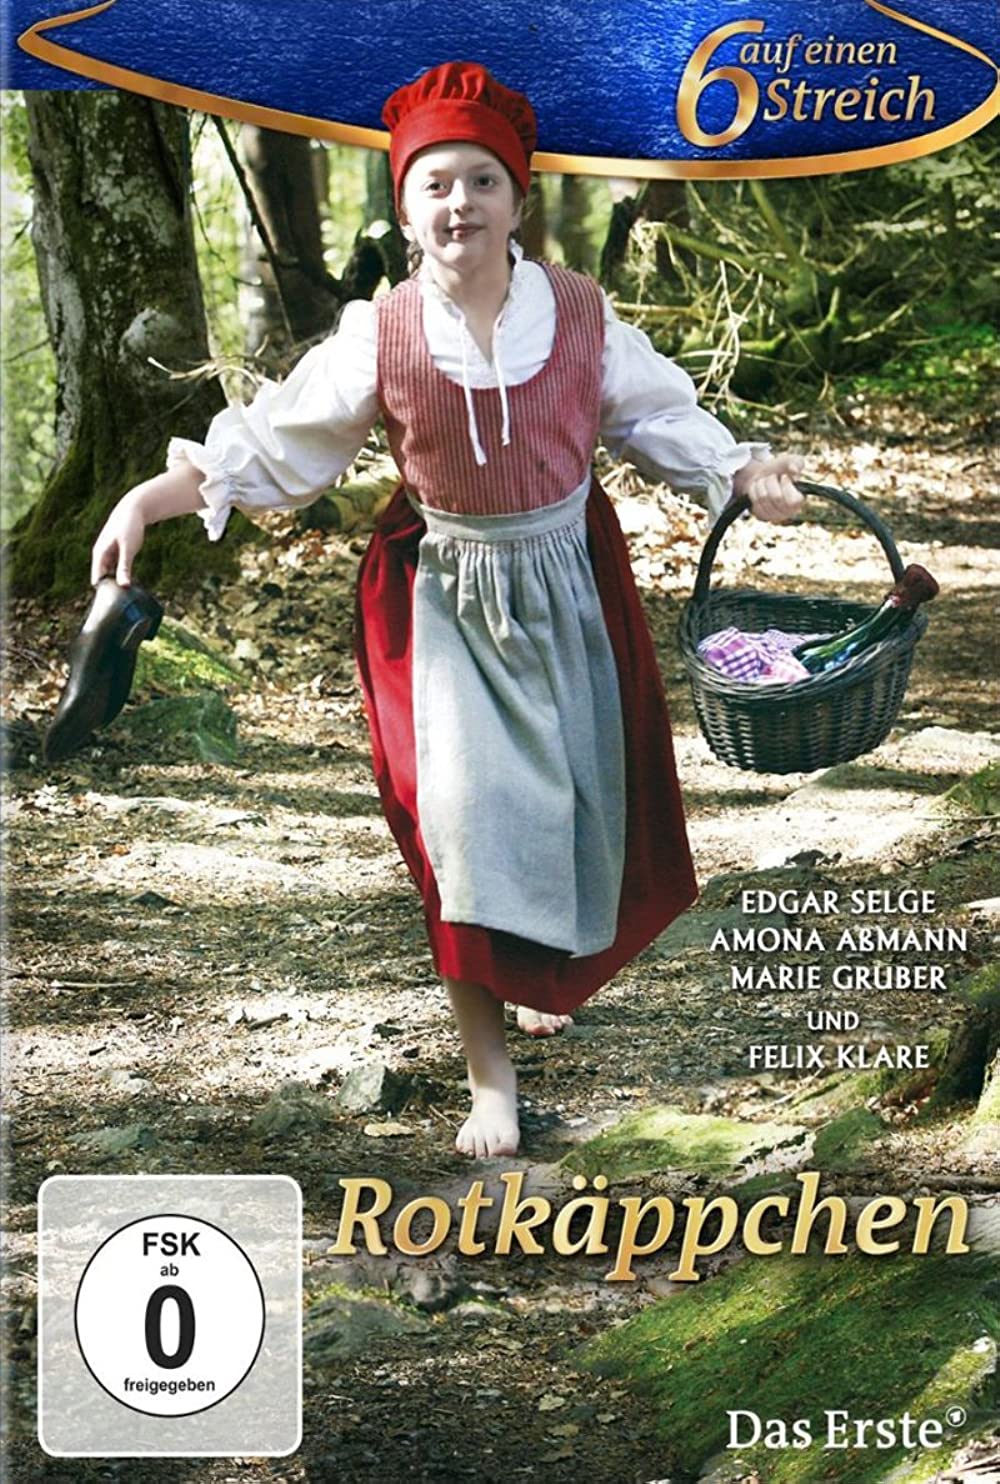 Filmbeschreibung zu Rotkäppchen (2012)